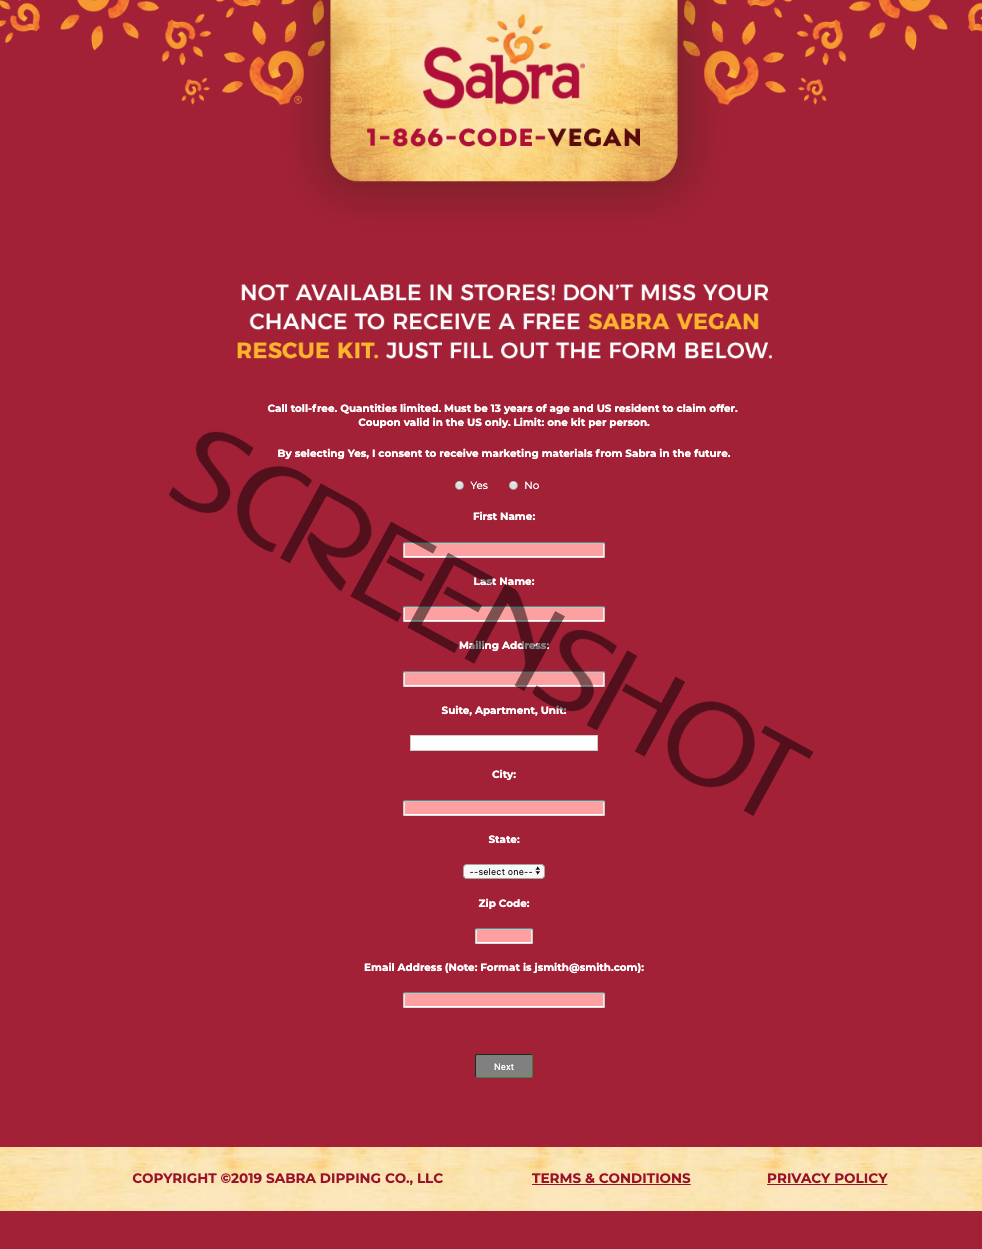 Screenshot of FREE Sabra Vegan Rescue Kit offer